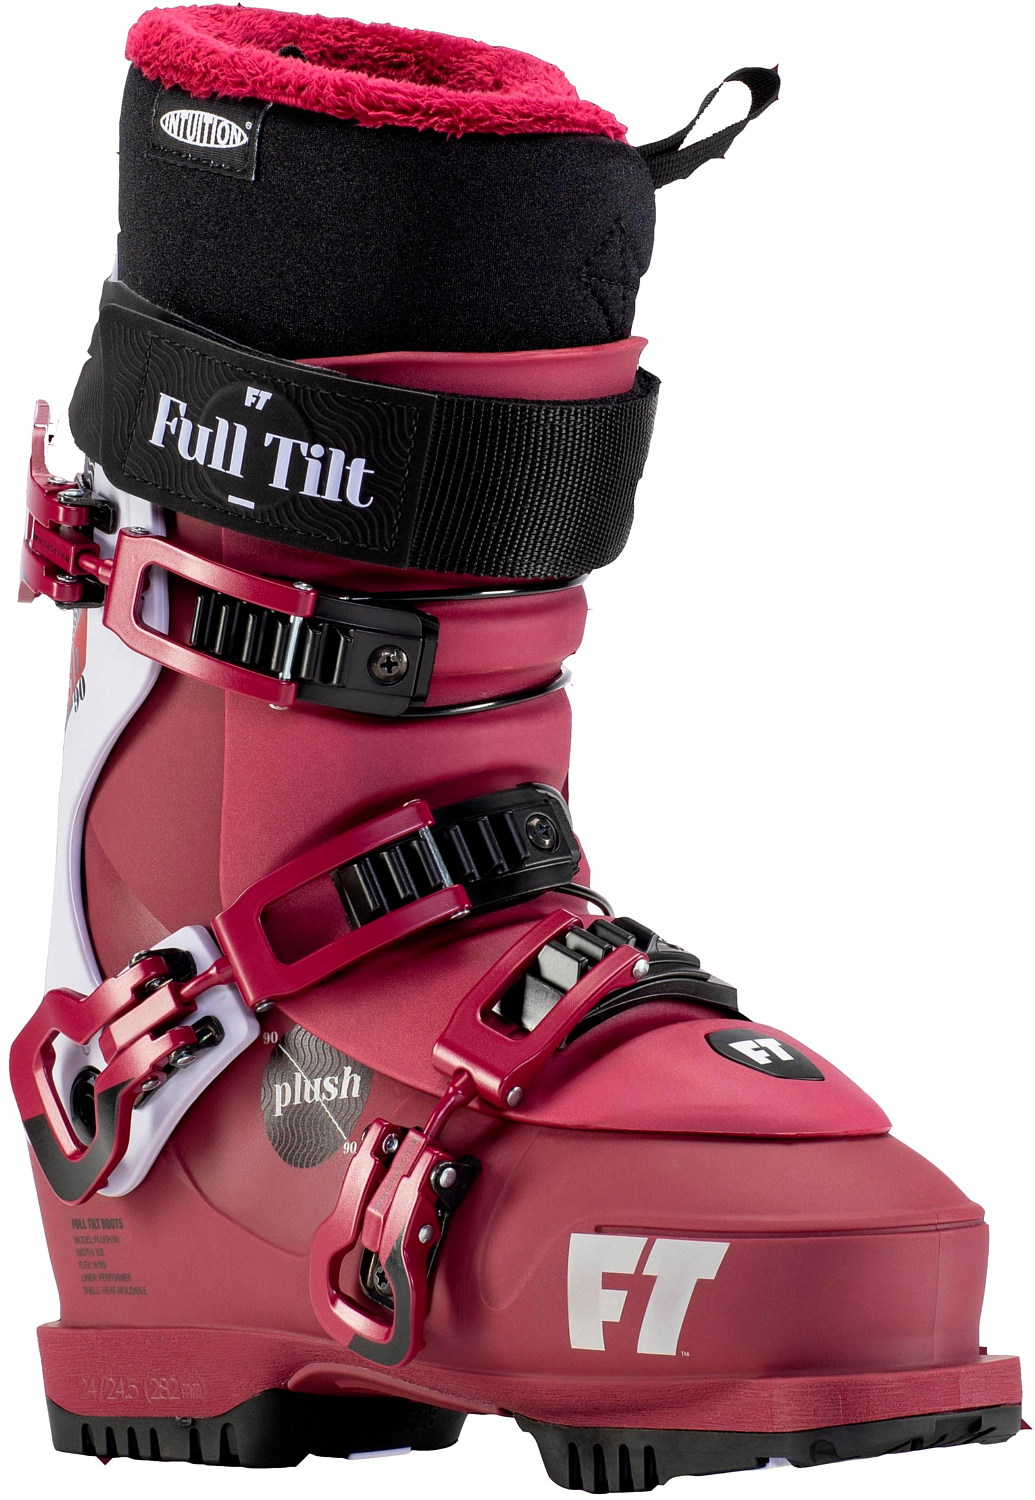 Горнолыжные ботинки Full Tilt Plush 90 Grip Walk